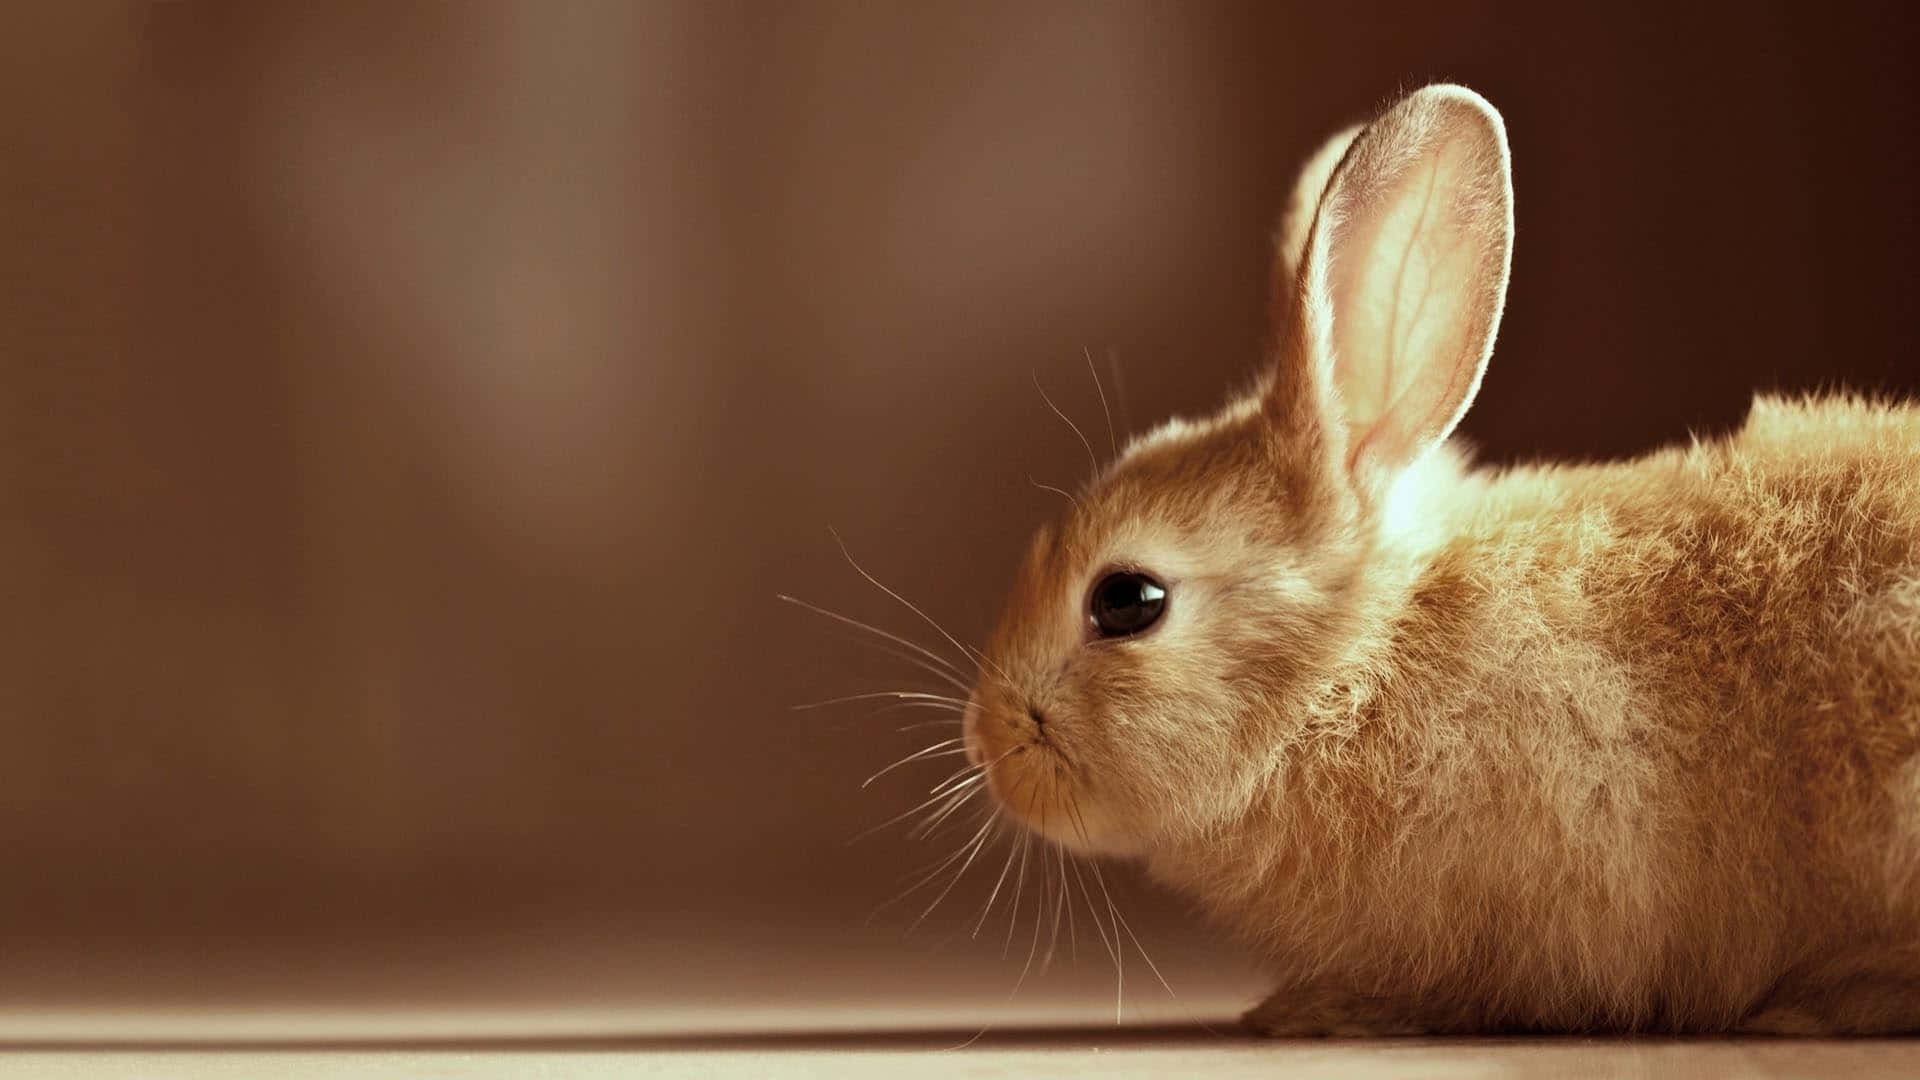 Cute Rabbit Focus Pictures